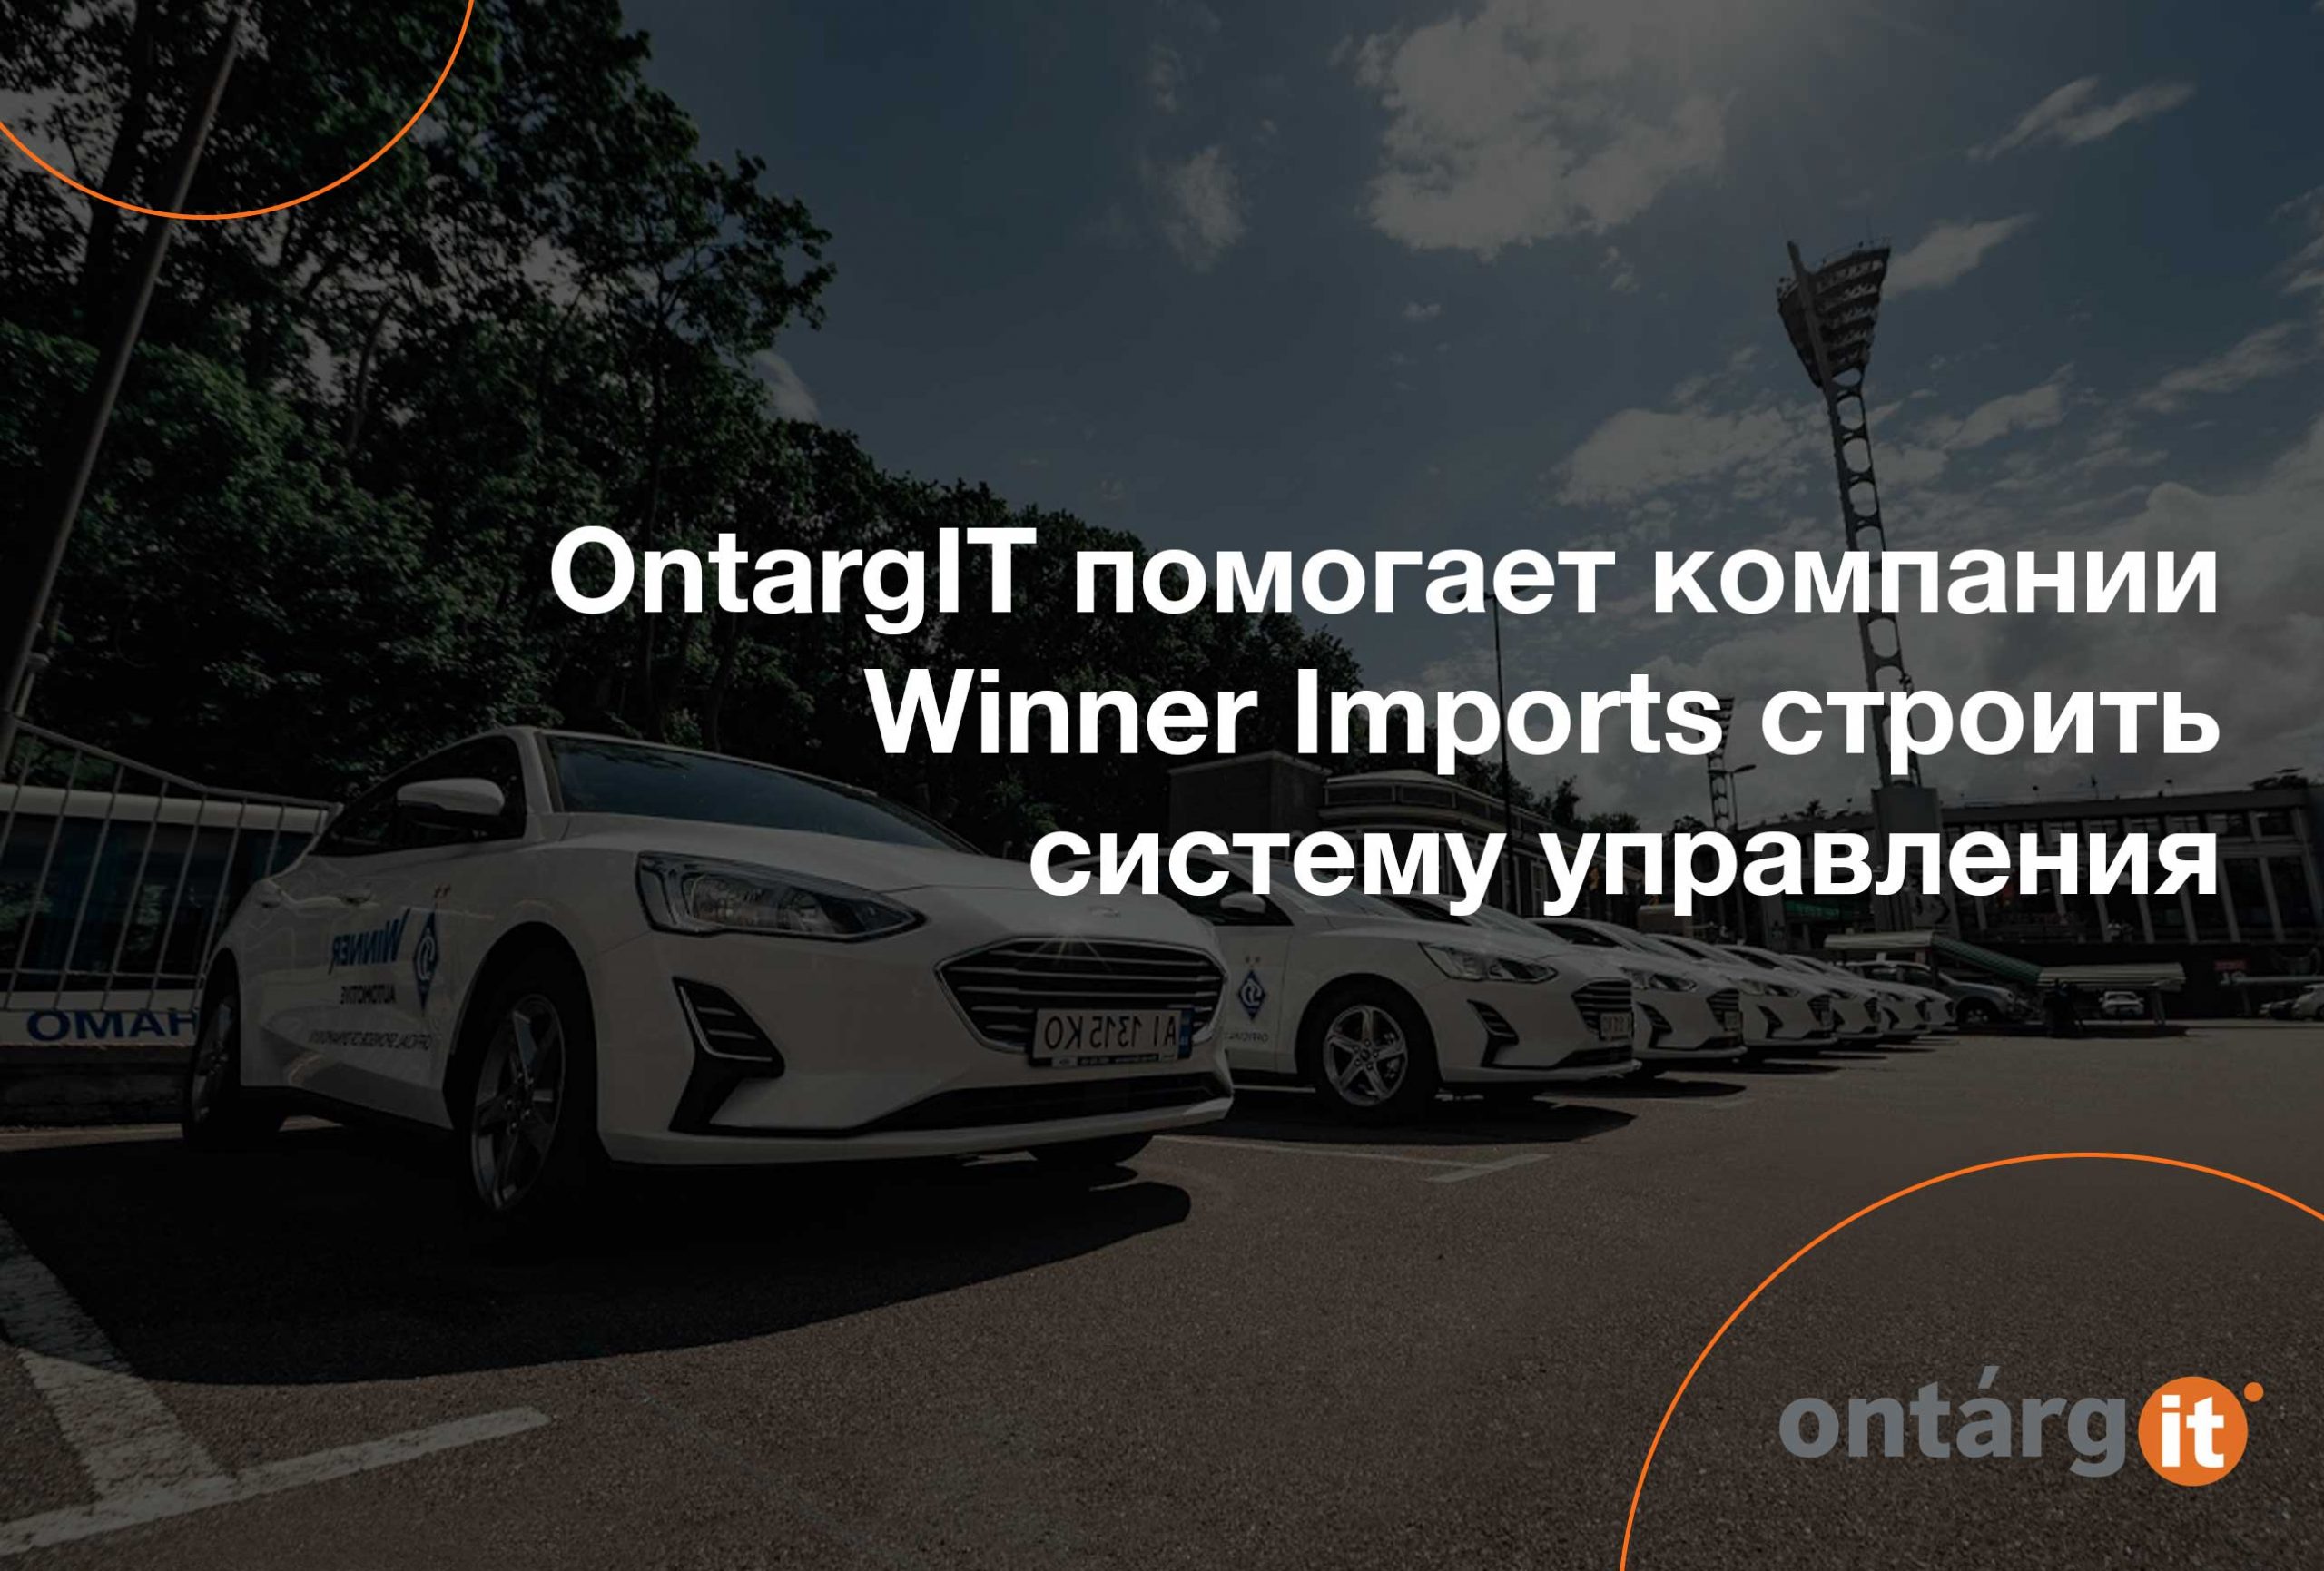 OntargIT помогает компании Winner Imports строить систему управления